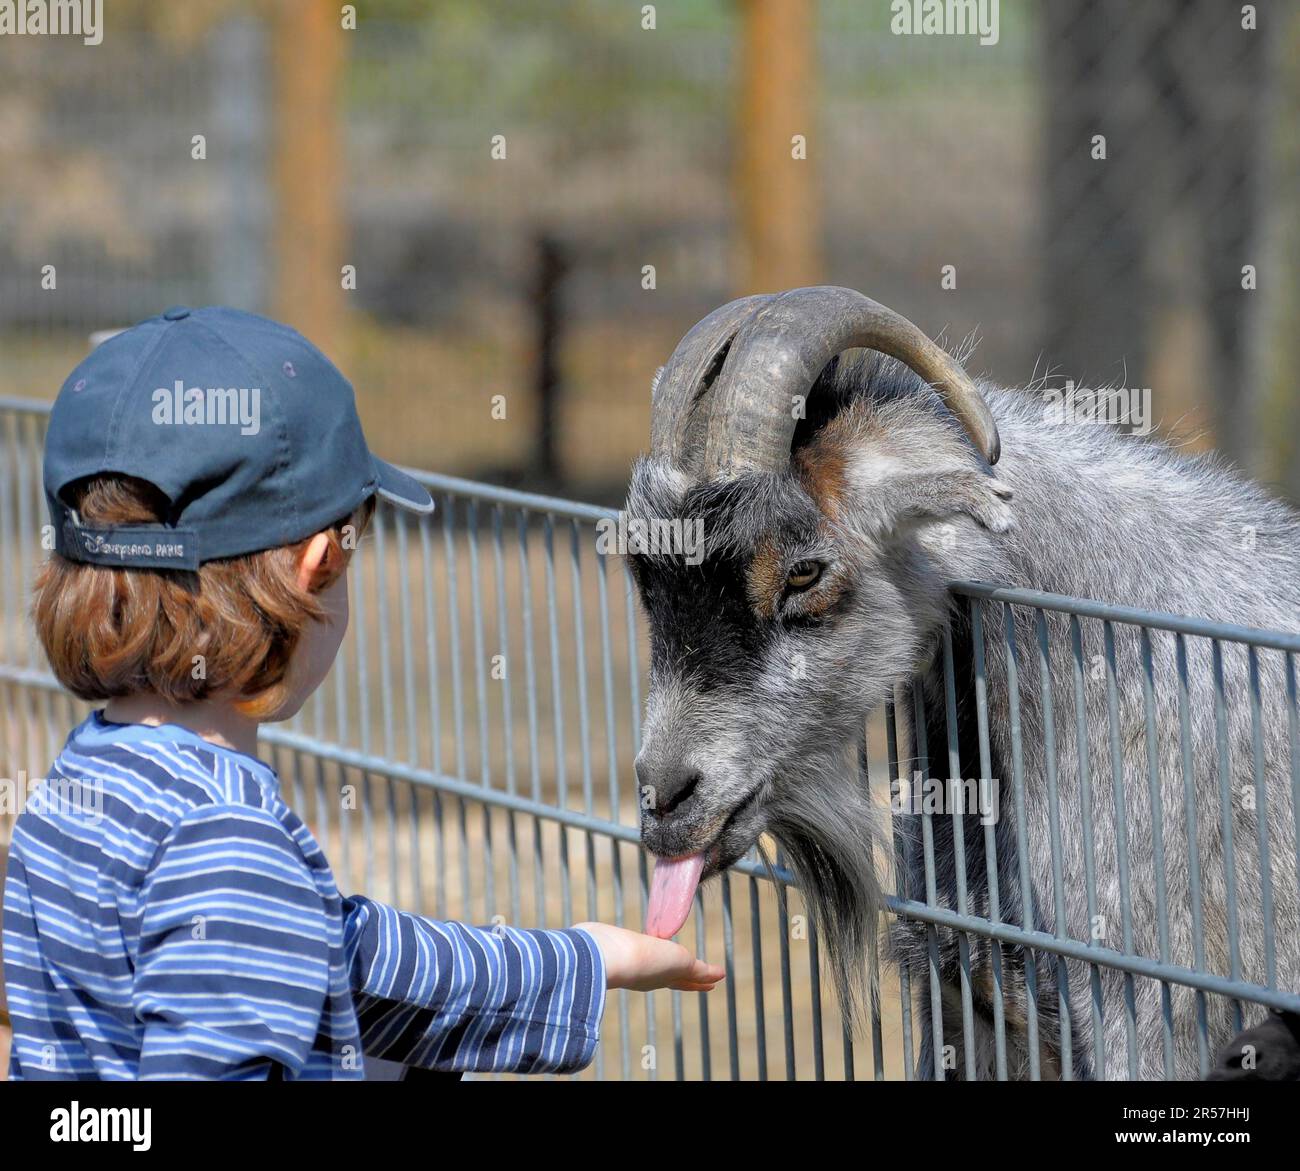 Chèvre dans le zoo, garçon avec alimentation de chèvre Banque D'Images